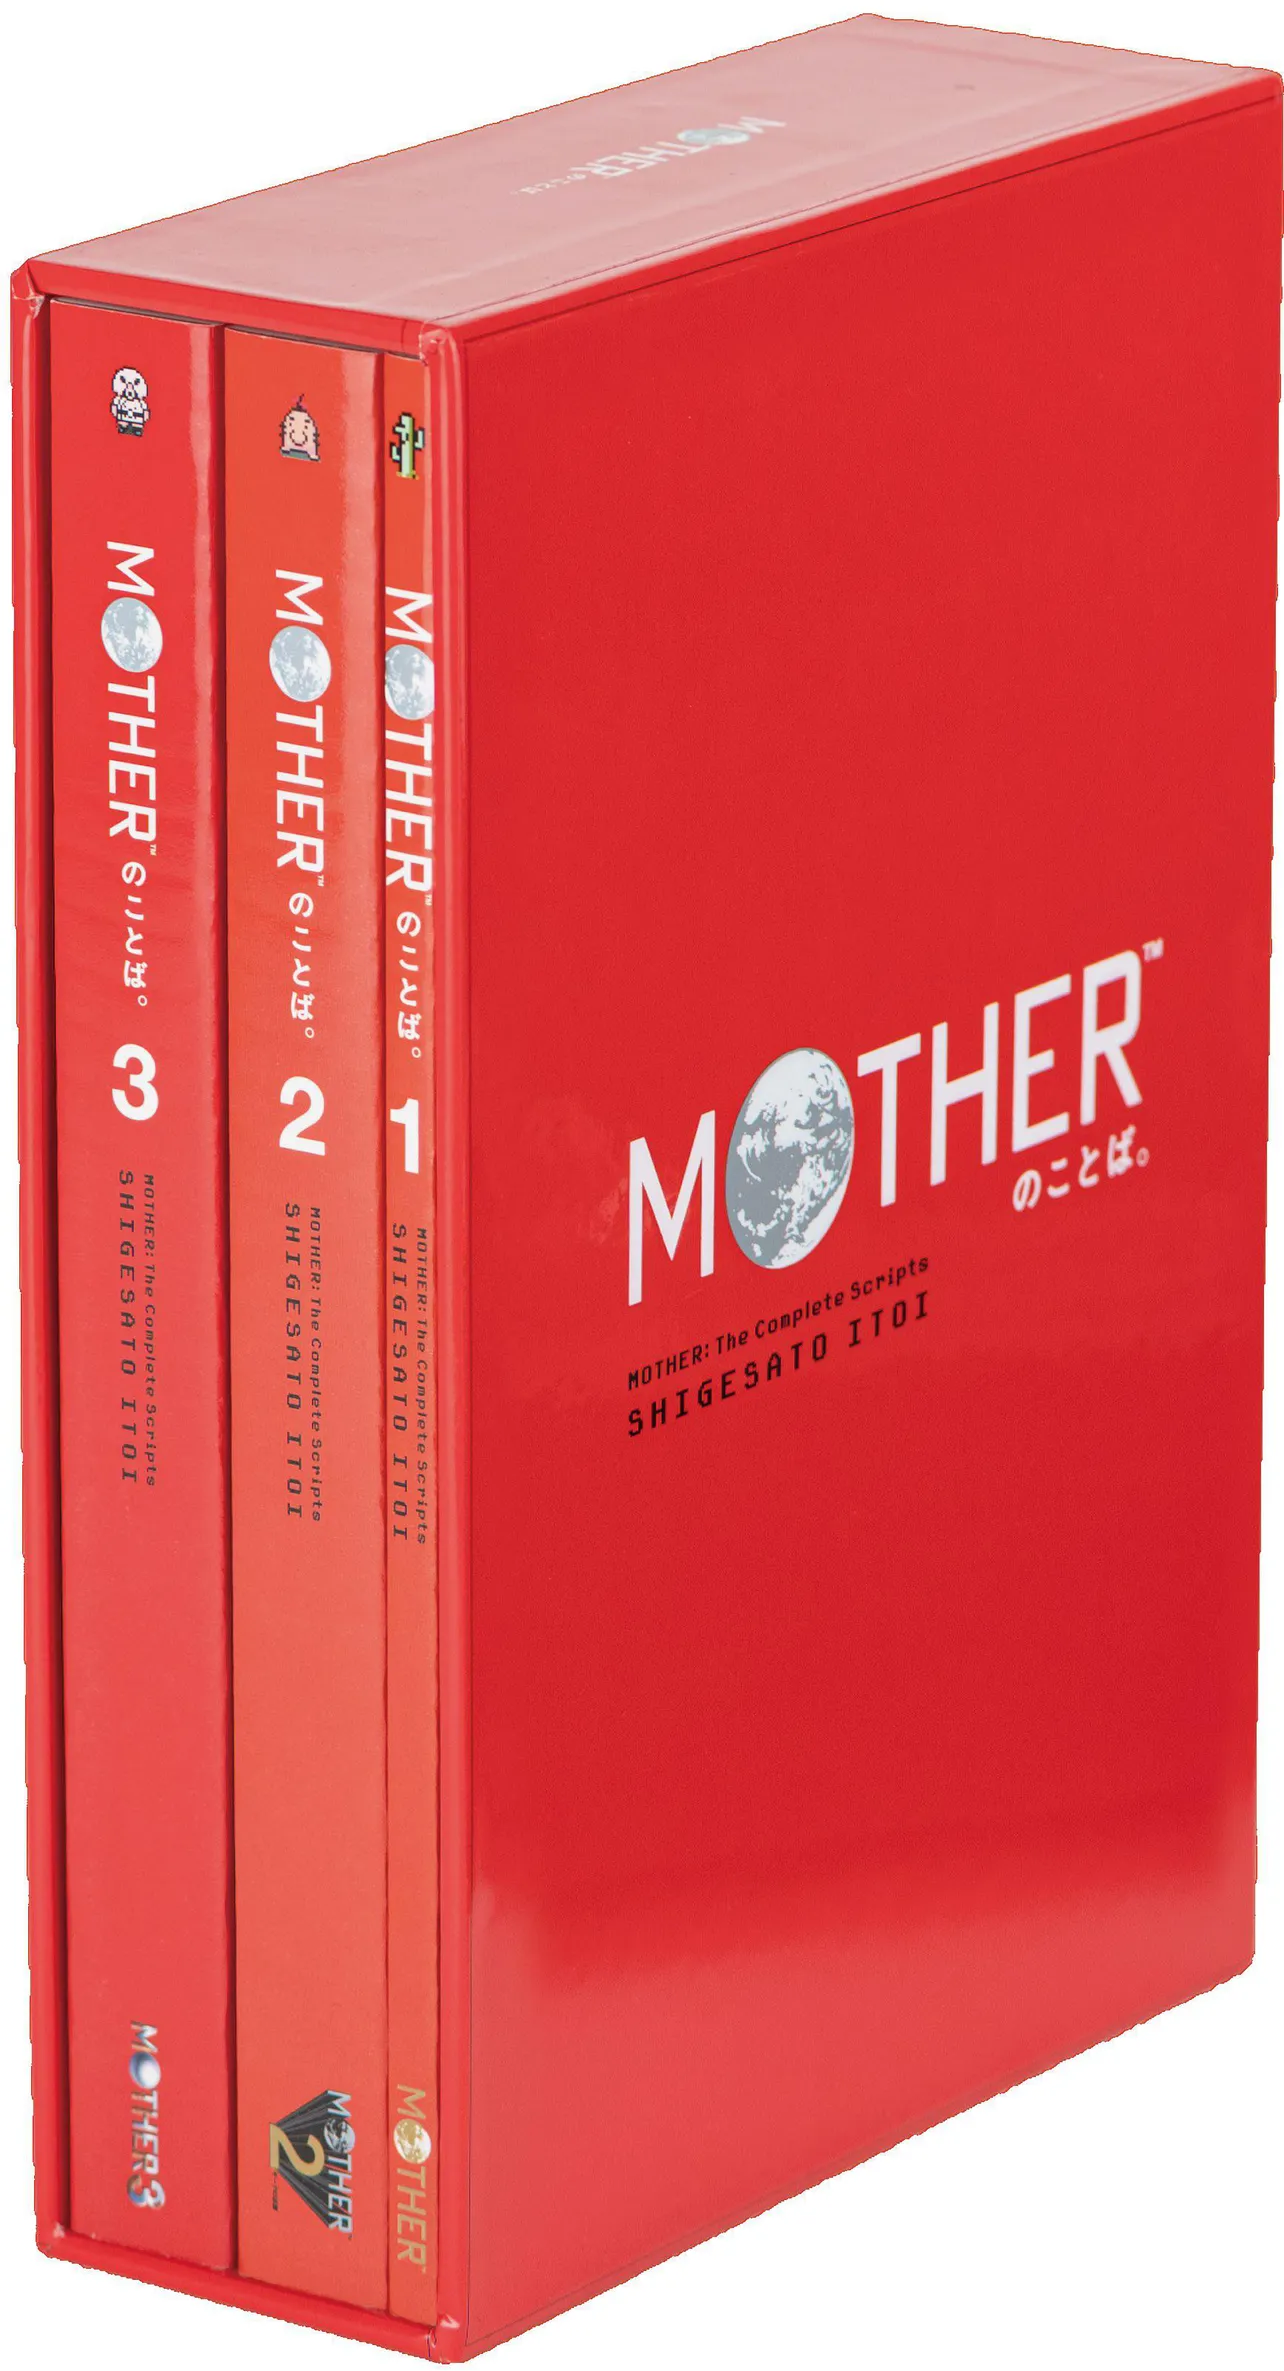 糸井重里がつくった名作RPG「MOTHER」シリーズのことばをすべて収録した本「MOTHRのことば。」(「ほぼ日ストア」12月14日先行発売/全国書店12月25日発売)